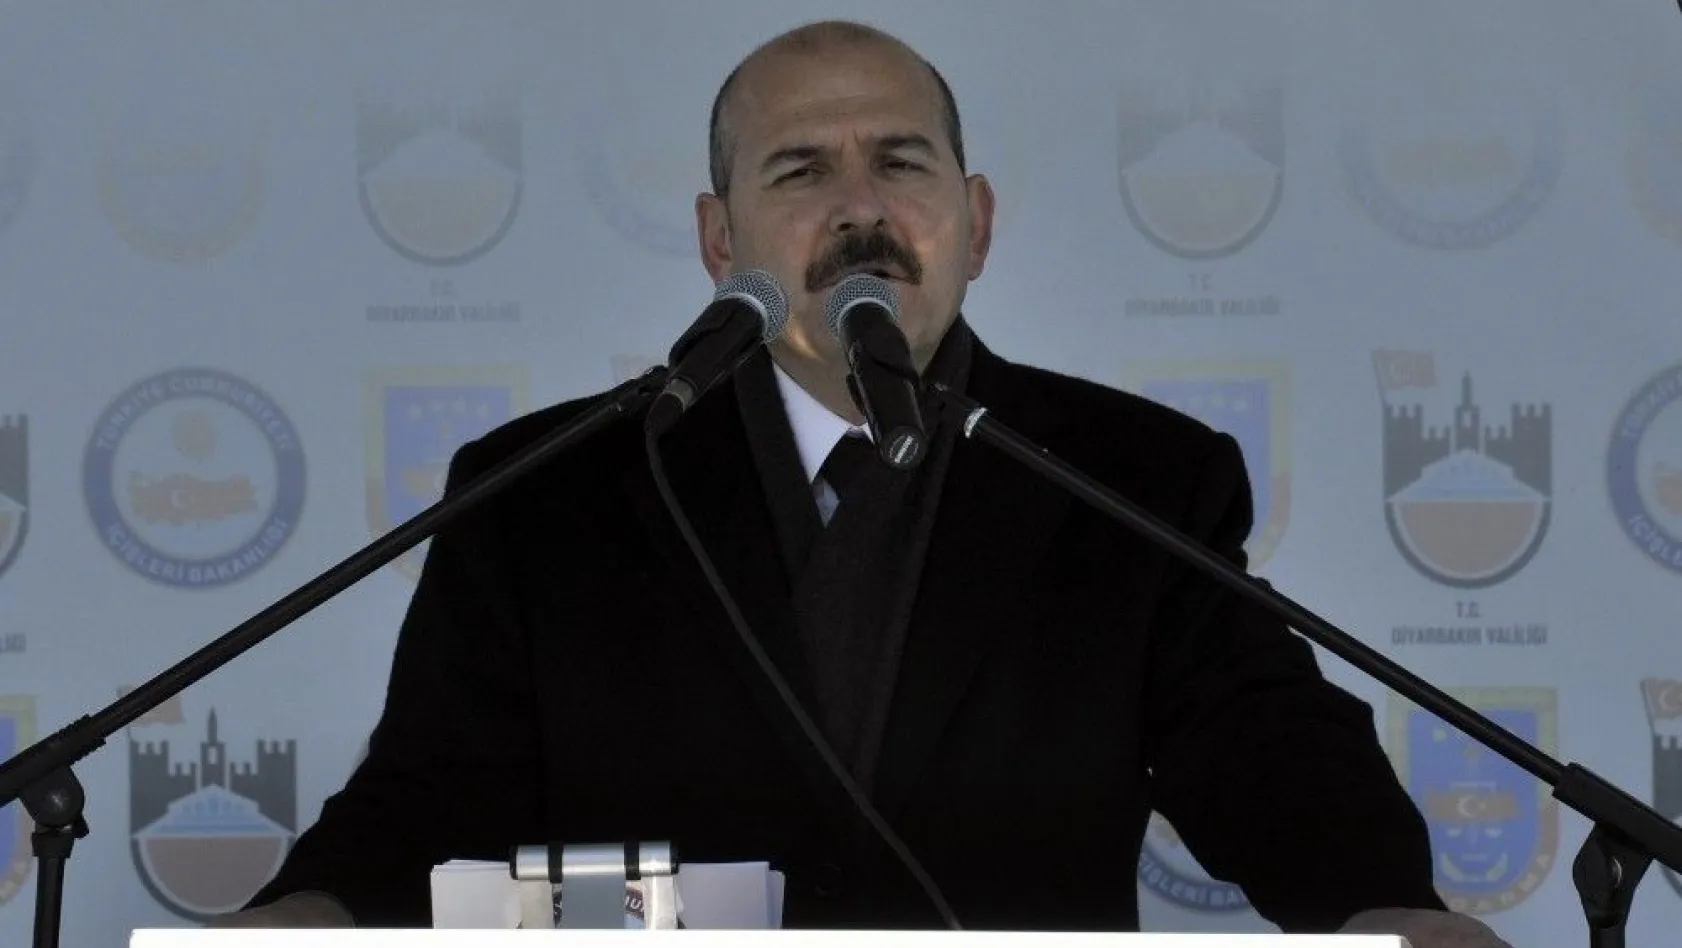 İçişleri Bakanı Soylu: 'Türkiye terör belasından kurtulmanın arifesinde'
